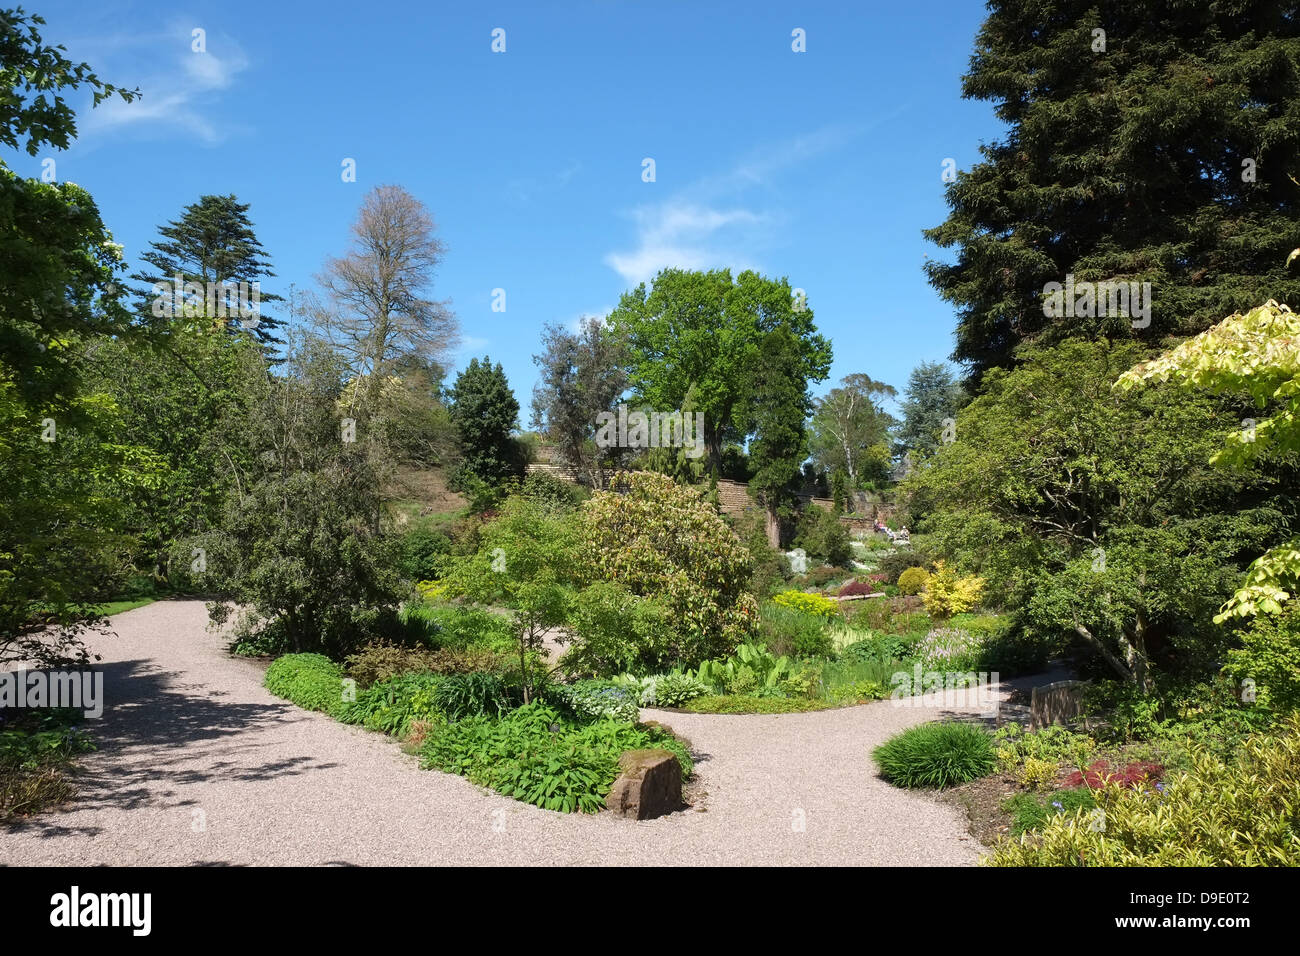 UK, Cheshire, Ness Botanic Gardens Stock Photo